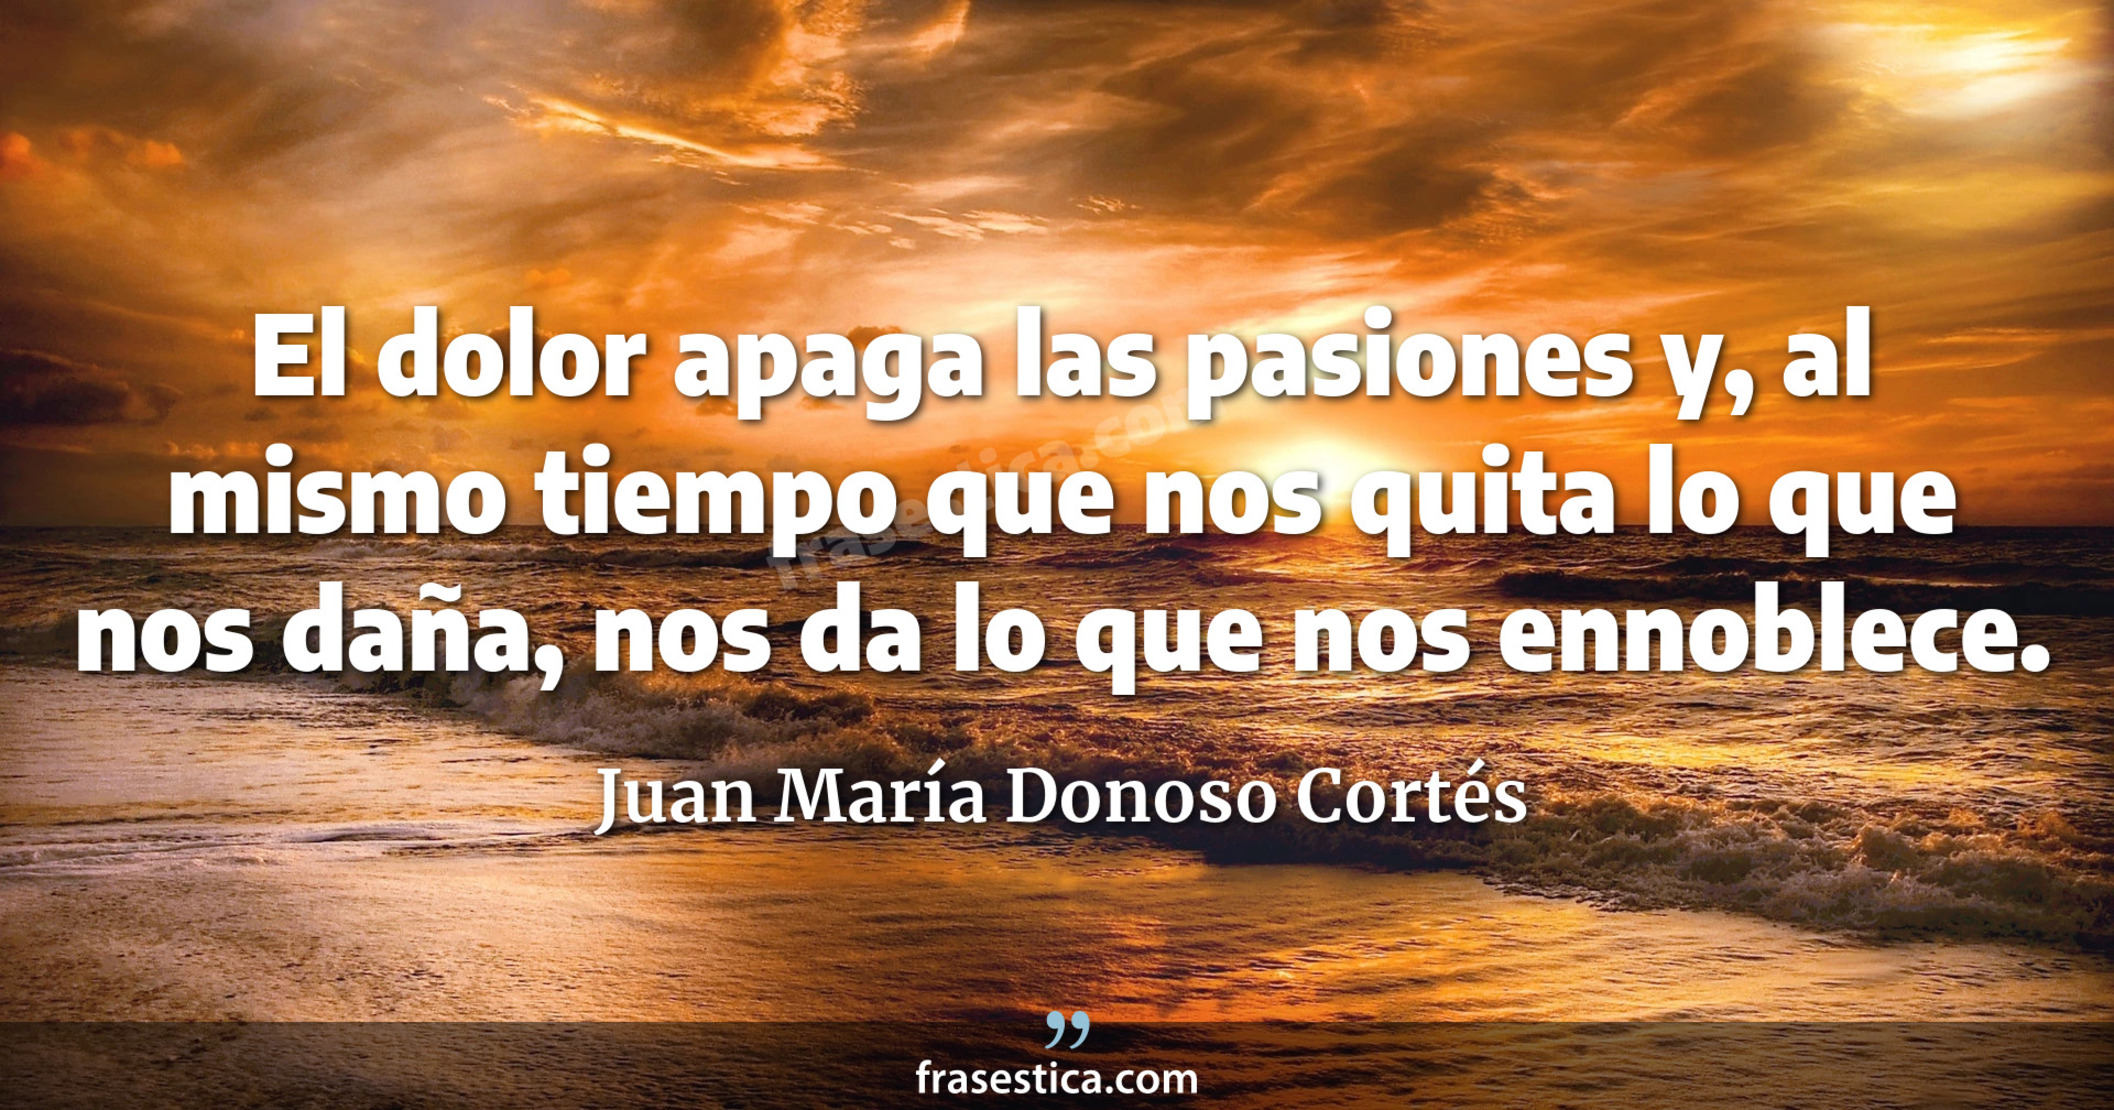 El dolor apaga las pasiones y, al mismo tiempo que nos quita lo que nos daña, nos da lo que nos ennoblece. - Juan María Donoso Cortés